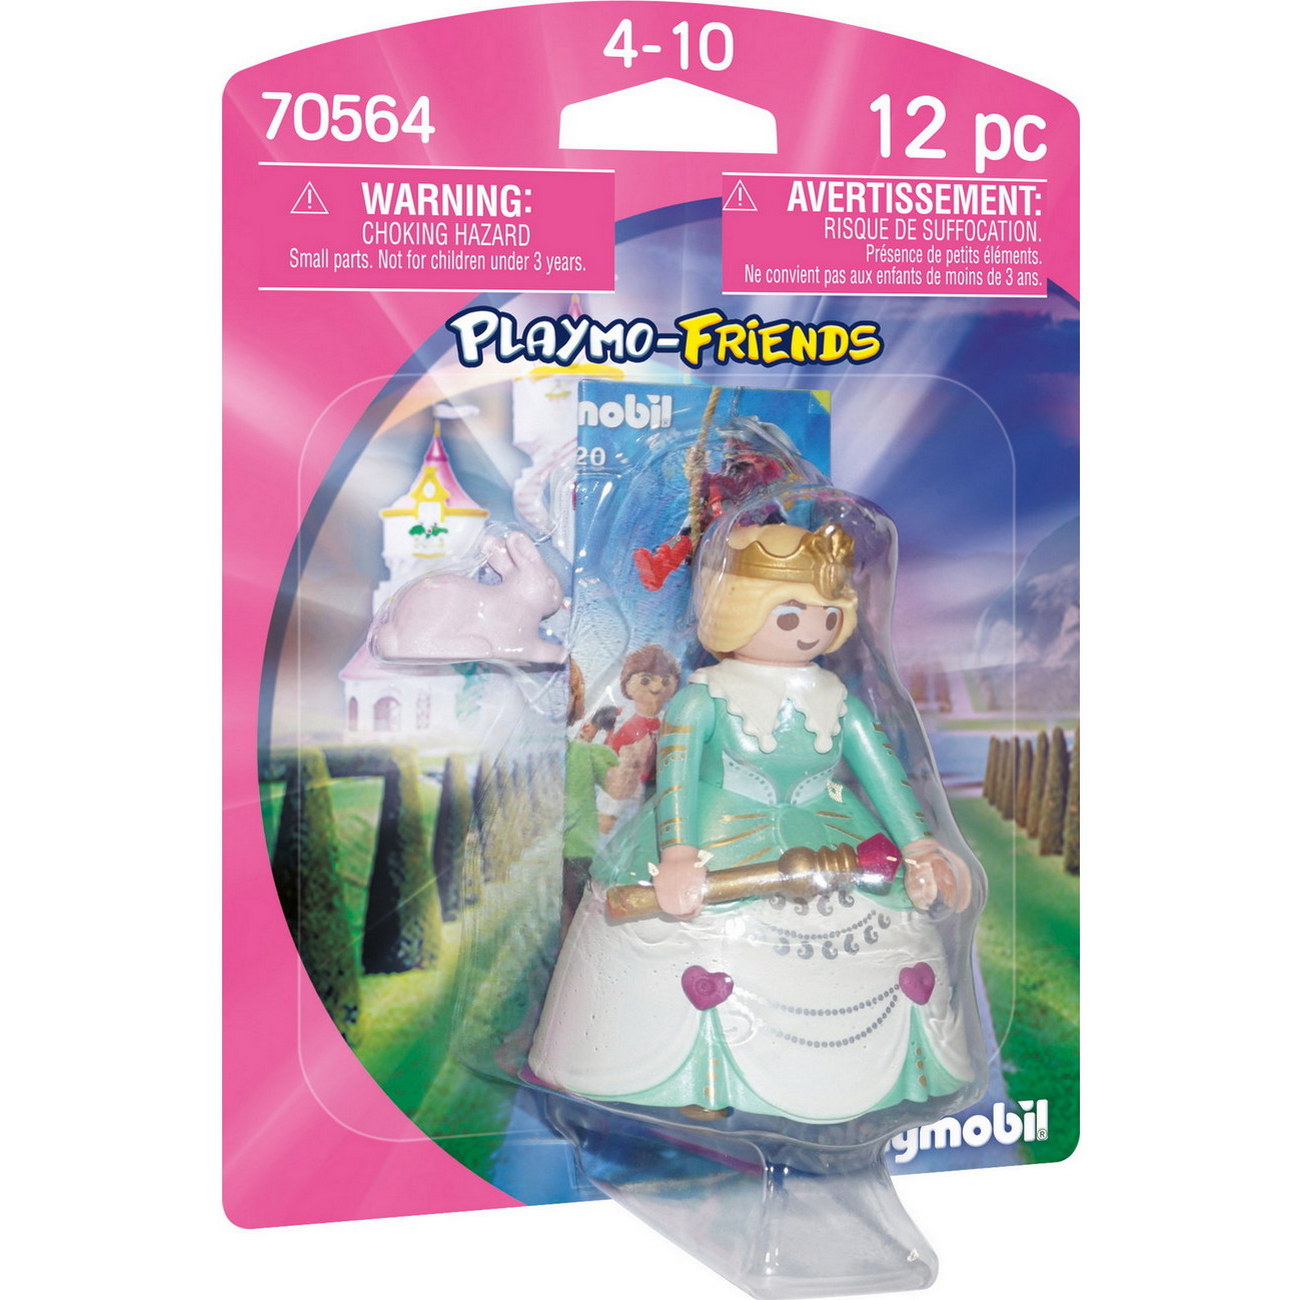 Playmobil 70564 - Prinzessin (PLAYMO-FRIENDS)